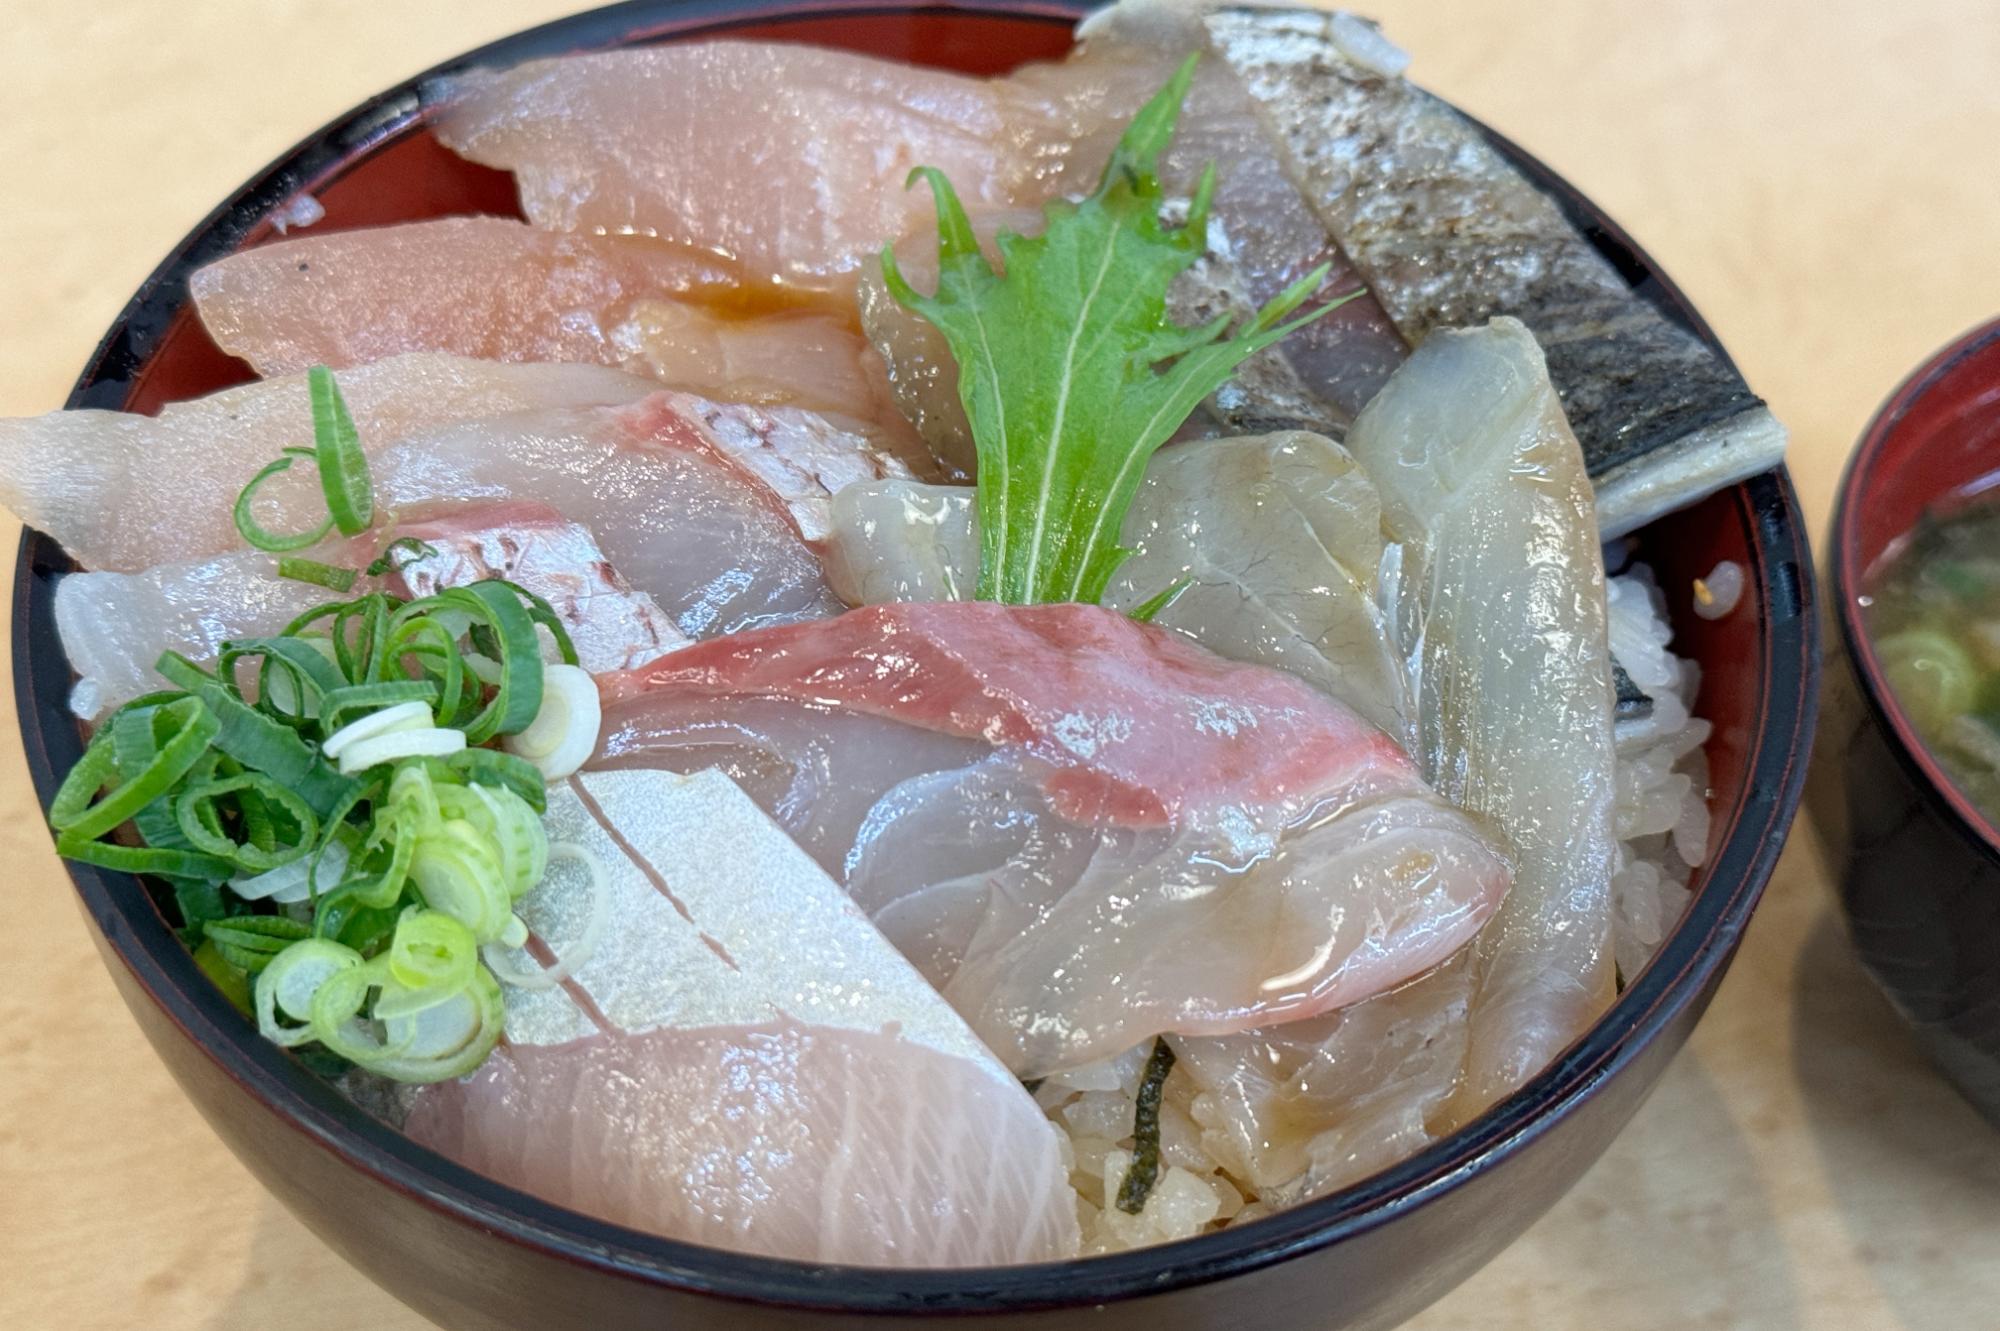 小田原の絶品海鮮丼「丼万次郎」が最高。レールに乗ってくる仕掛けも面白い